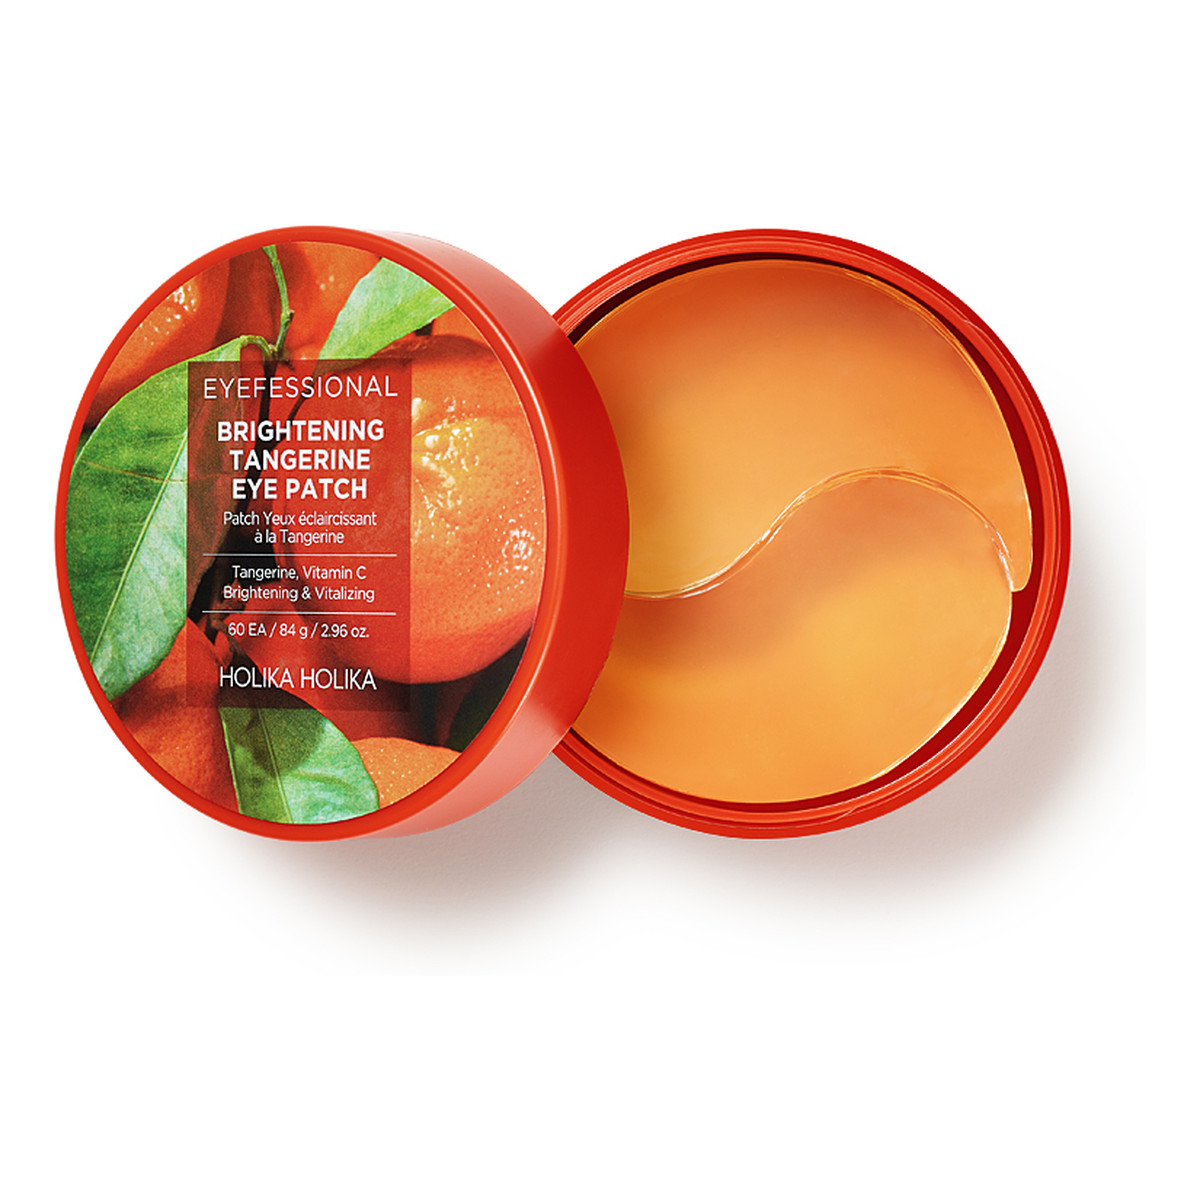 Holika Holika Eyefessional brightening tangerine eye patch hydrożelowe płatki pod oczy z ekstraktem z mandarynki 60szt